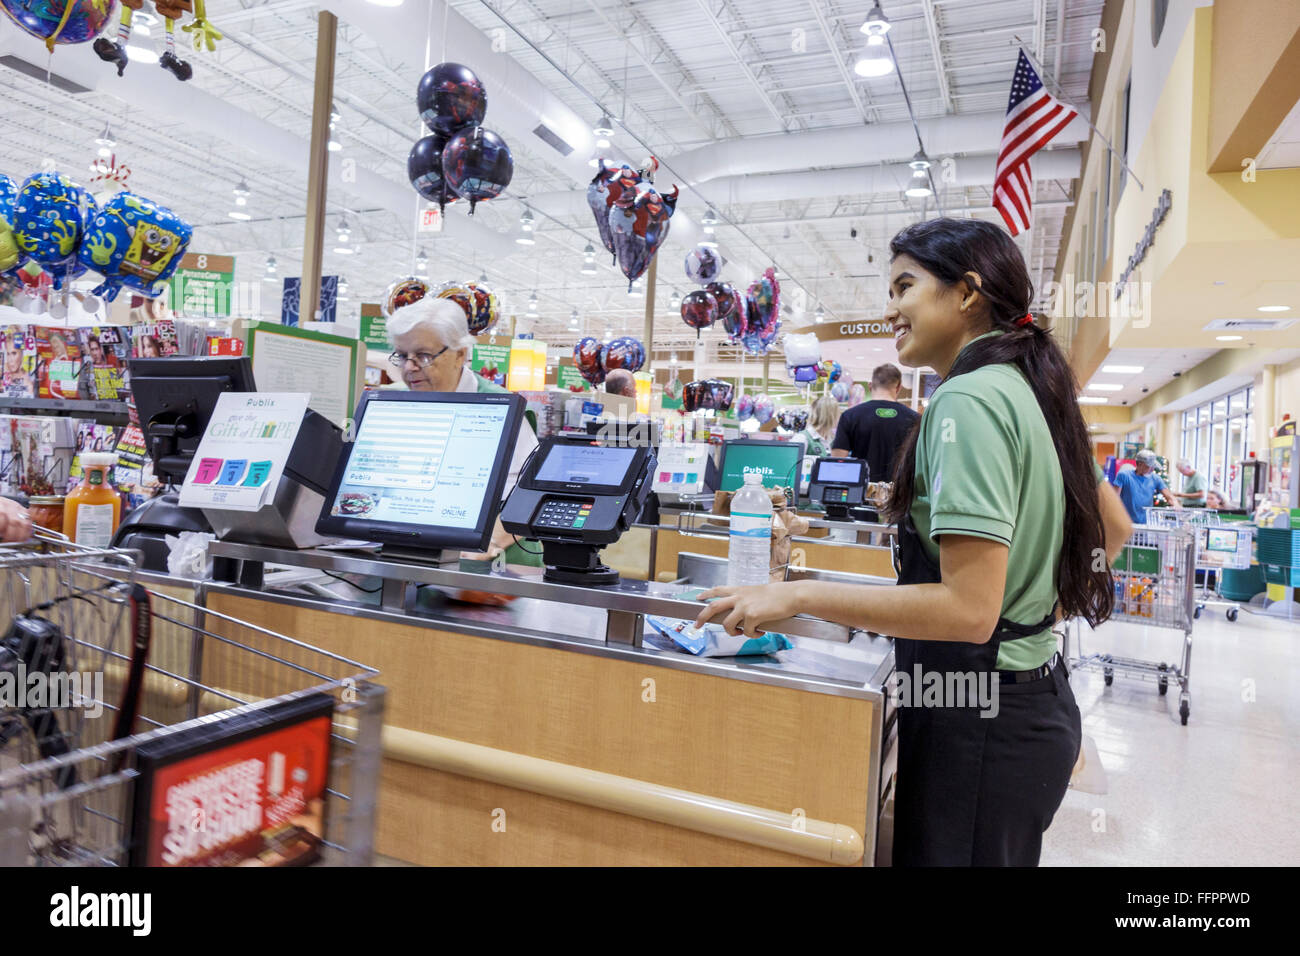 Florida Ocala Publix Lebensmittelgeschäft Supermarkt Kasse Kassierer Bagger, Hispanic teen Teenager Mädchen weiblich Arbeiter Mitarbeiter, Stockfoto